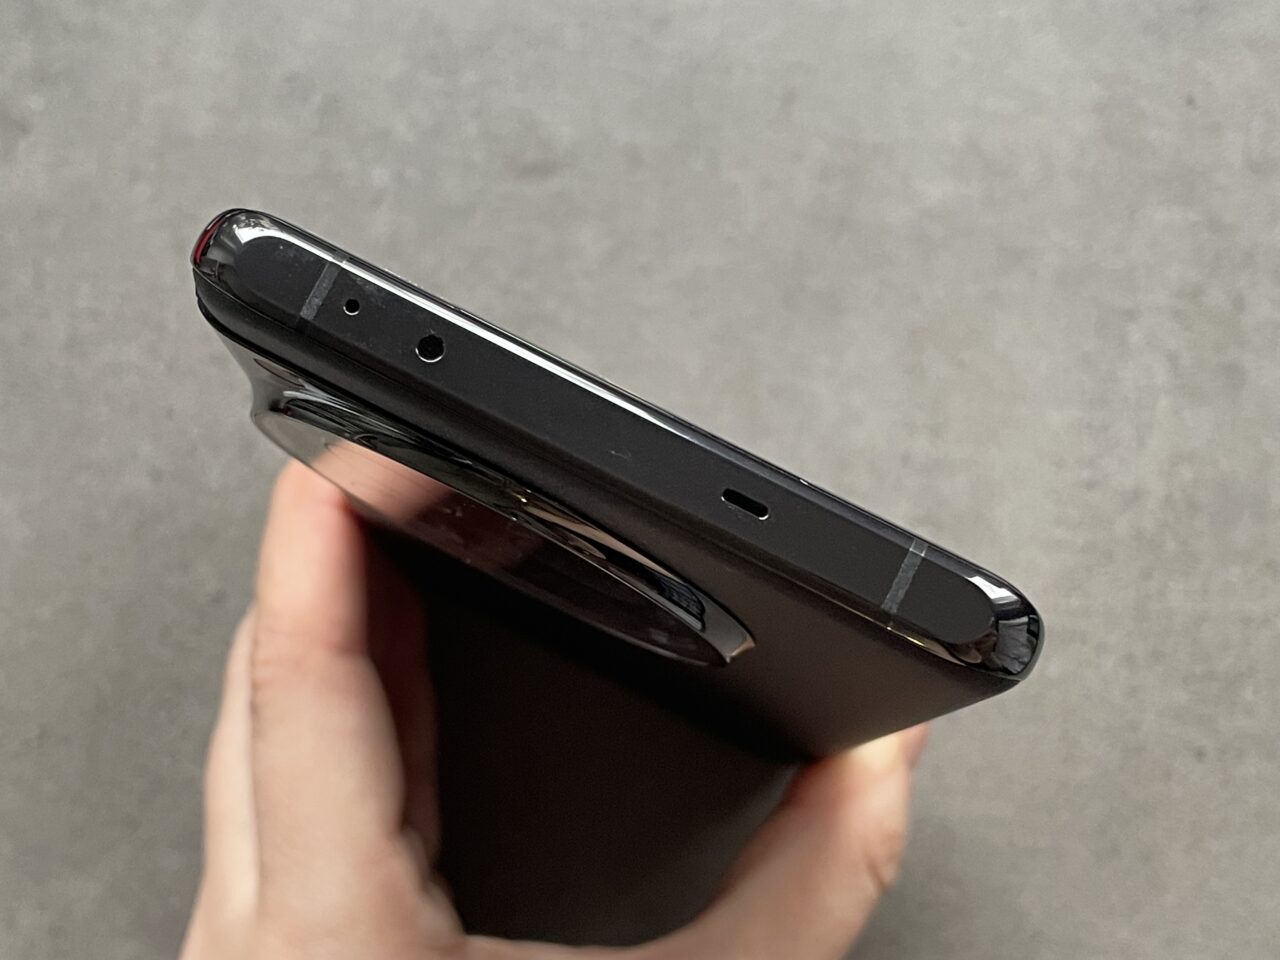 Czarny smartfon trzymany w dłoni z widocznym górnym brzegiem aparatu, pokazując gniazdo słuchawkowe i mikrofon.